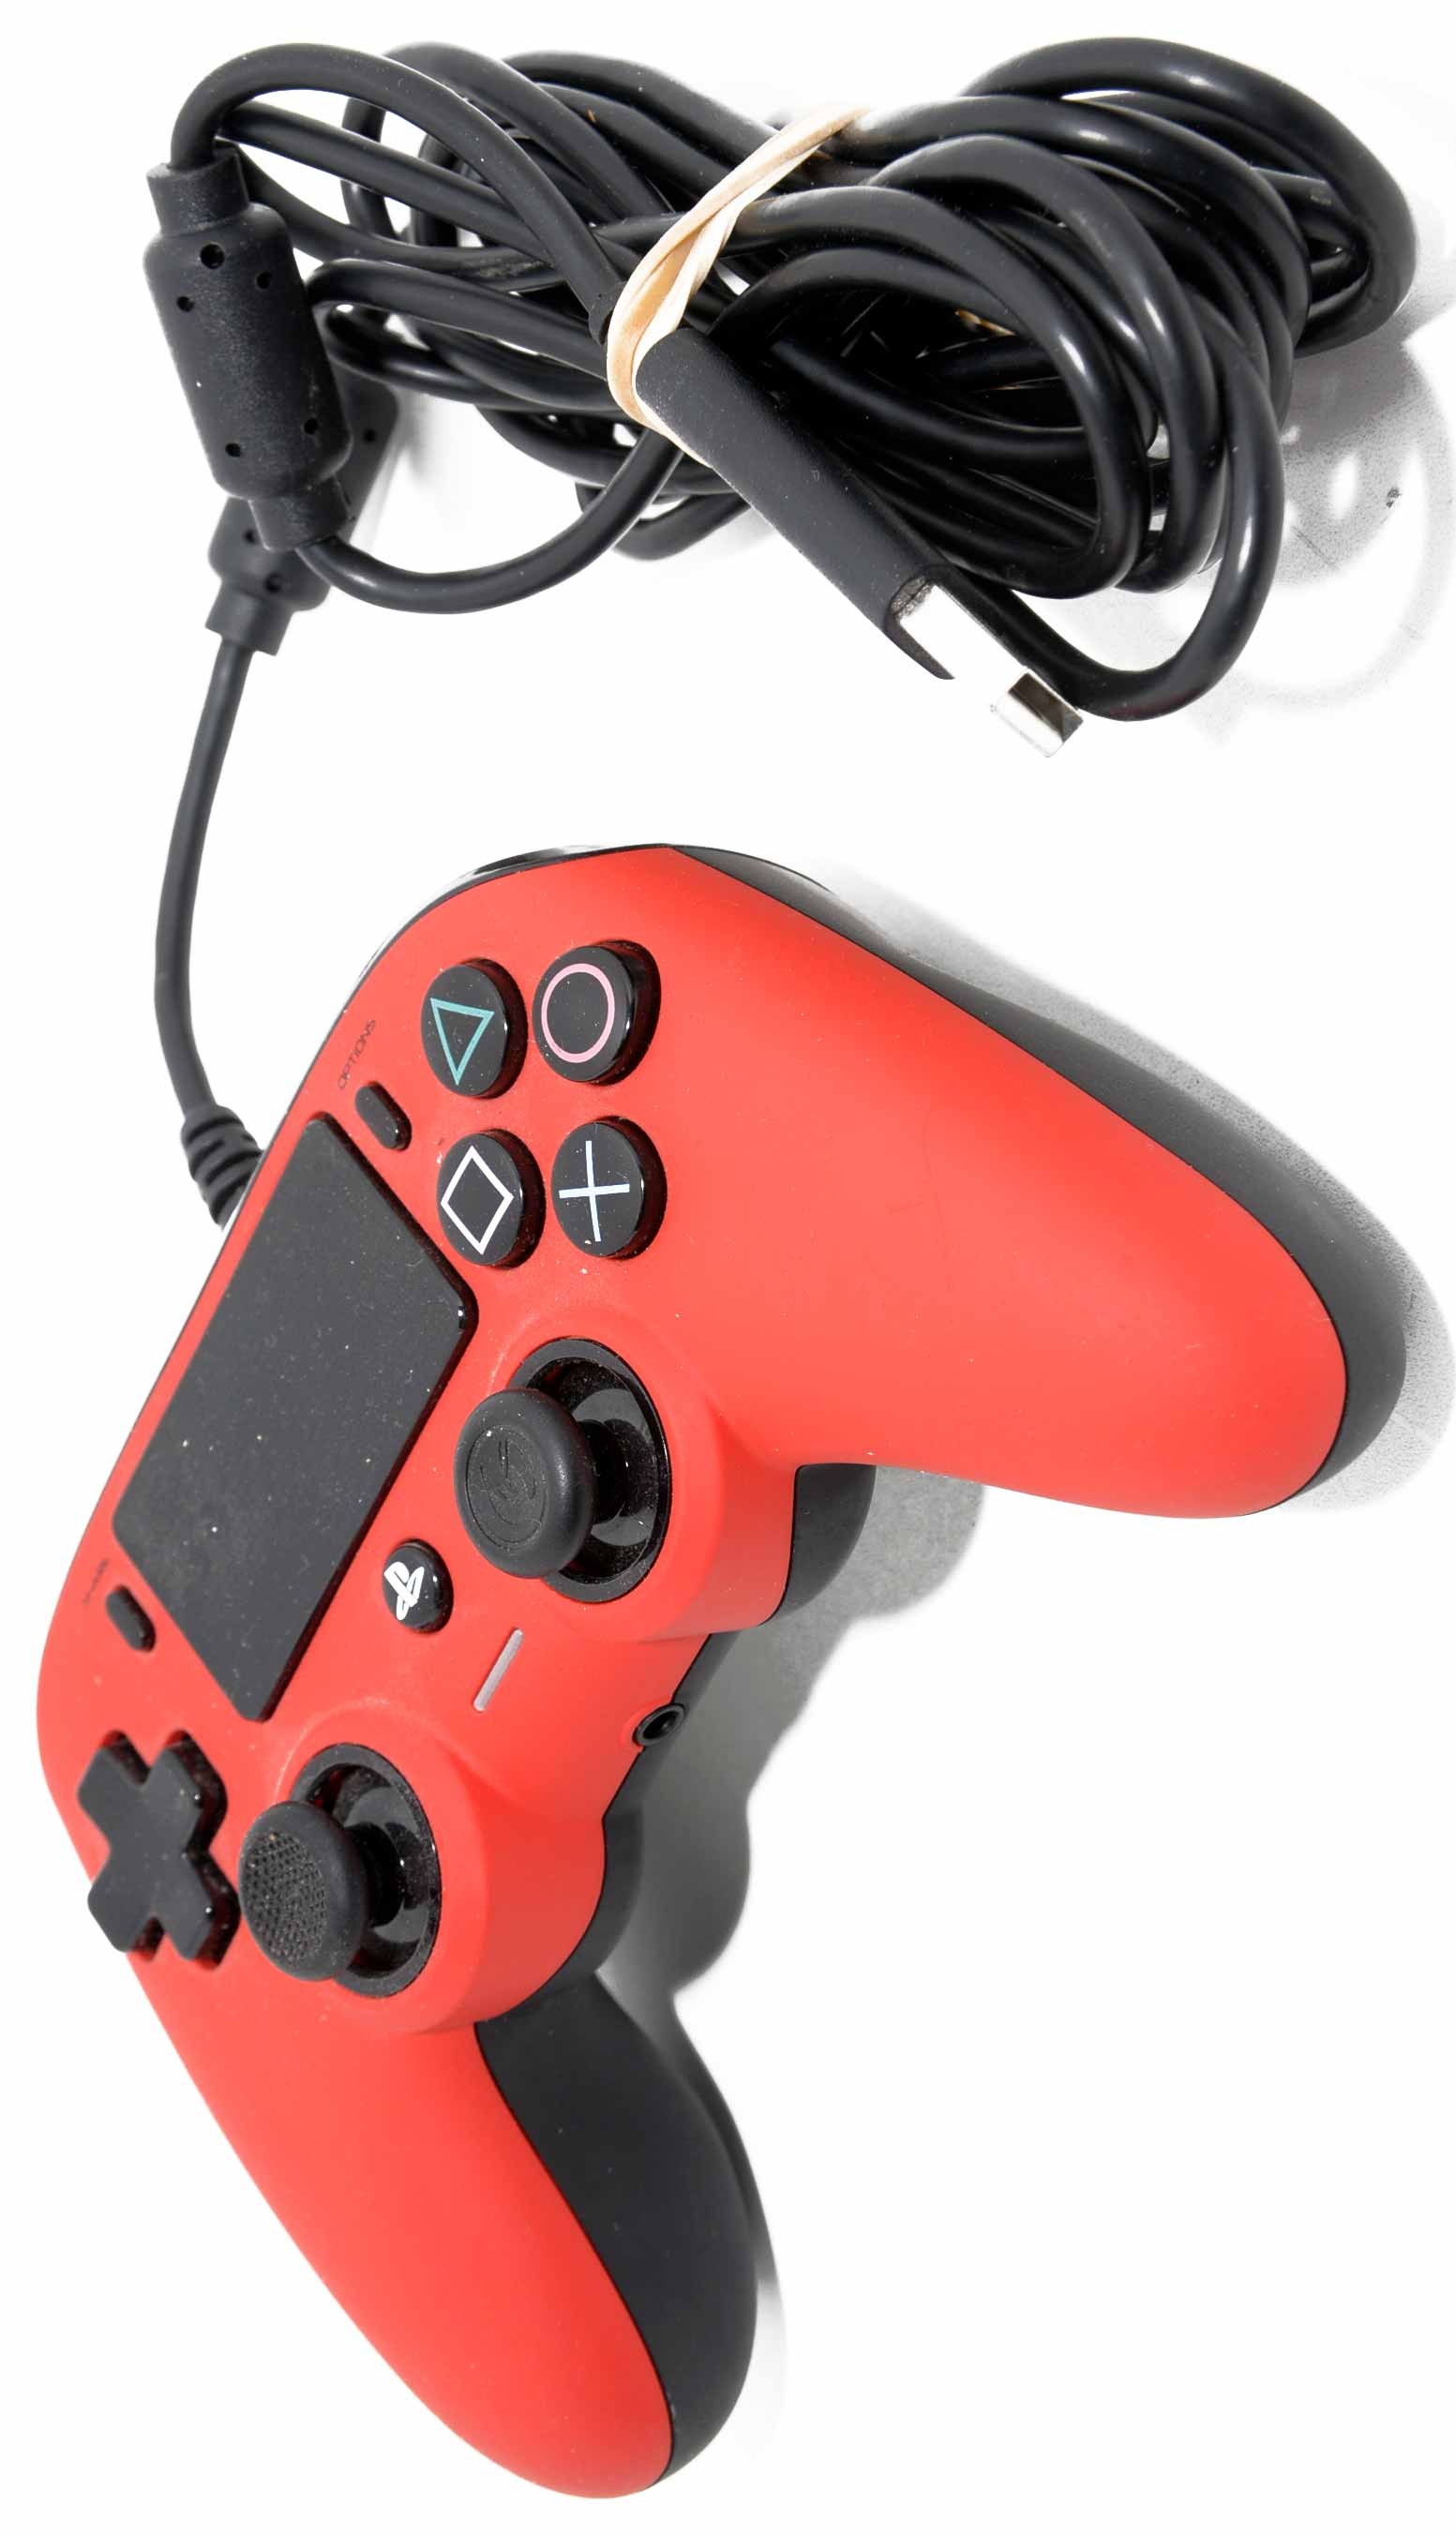 Mando Nacon Con Cable Rojo - Licencia Oficial Sony. Playstation 4